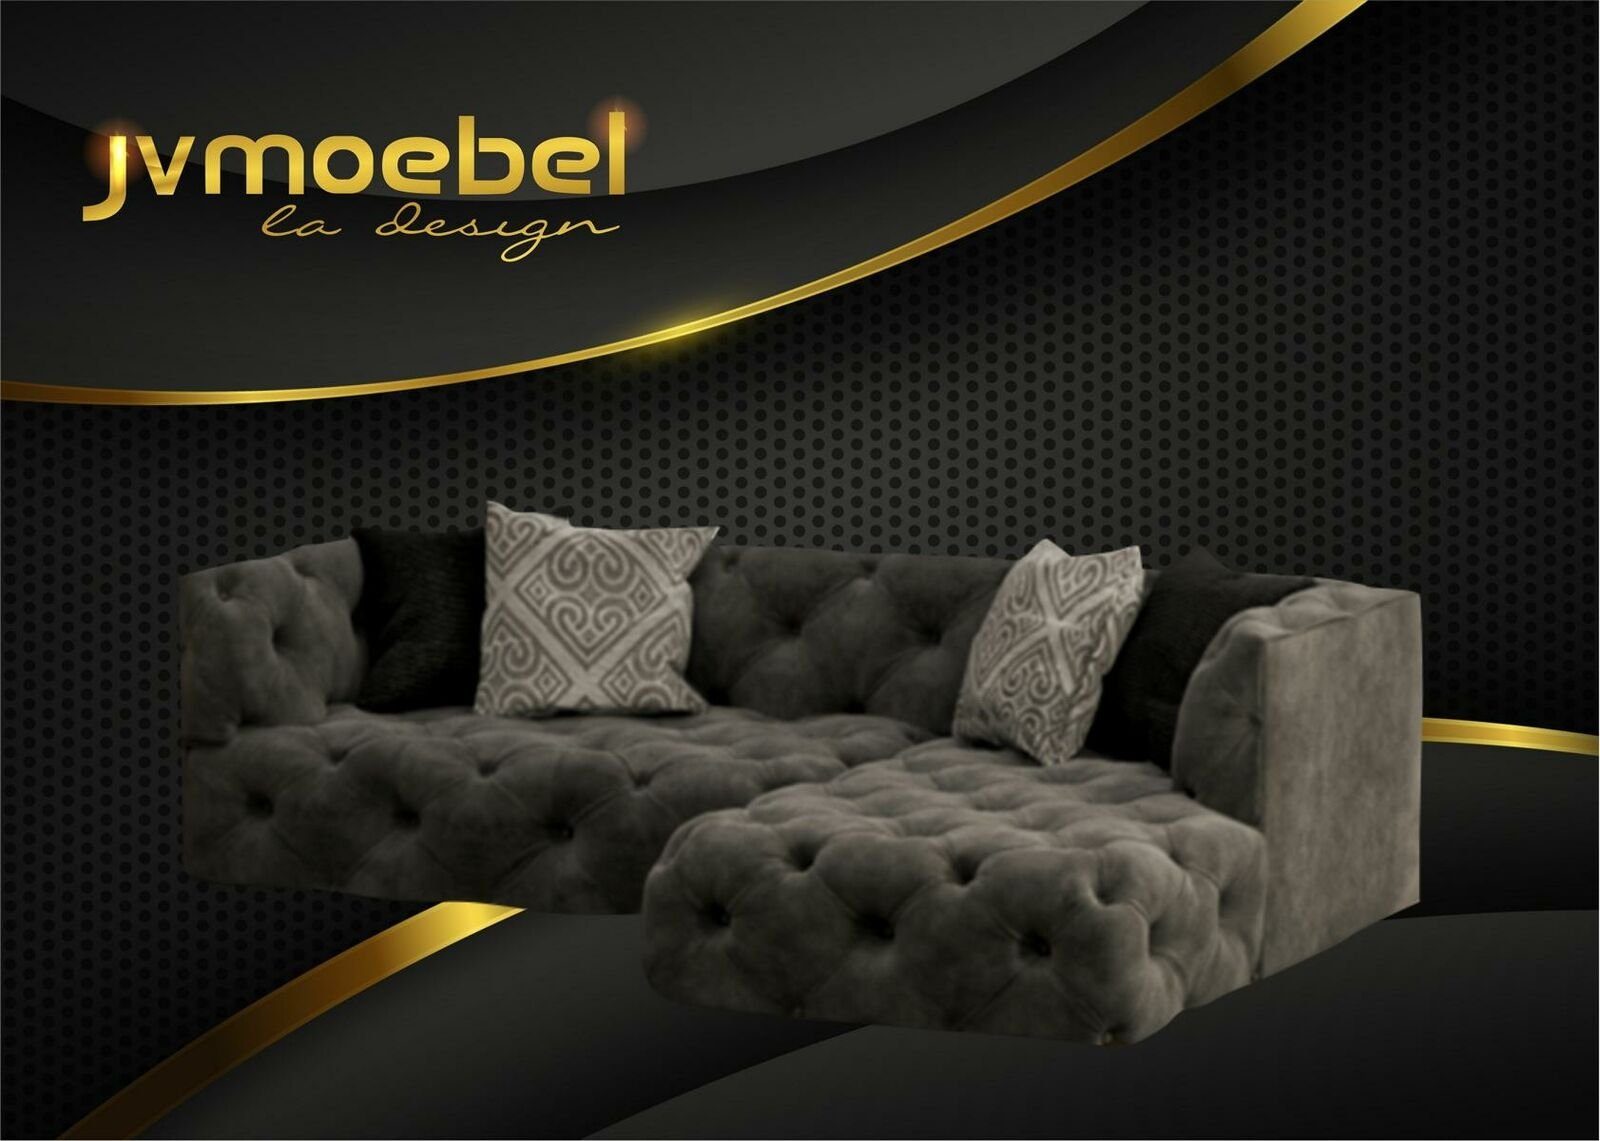 JVmoebel Ecksofa Braunes Chesterfield L-Form Couch Design Polstermöbel Neu, Made in Europe Grau